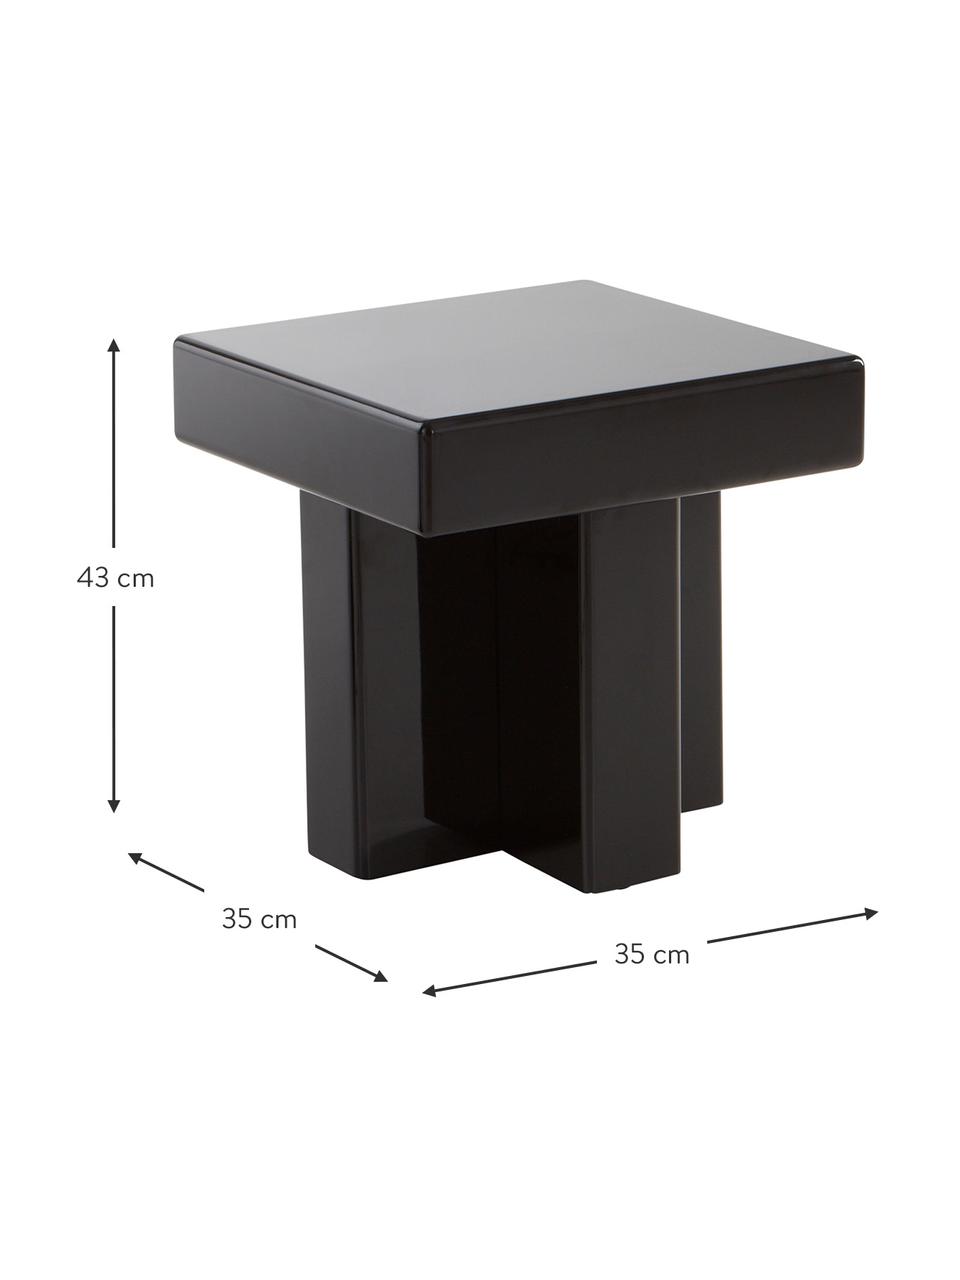 Table d'appoint Crozz, MDF (panneau en fibres de bois à densité moyenne), laqué, Noir, larg. 35 x haut. 43 cm